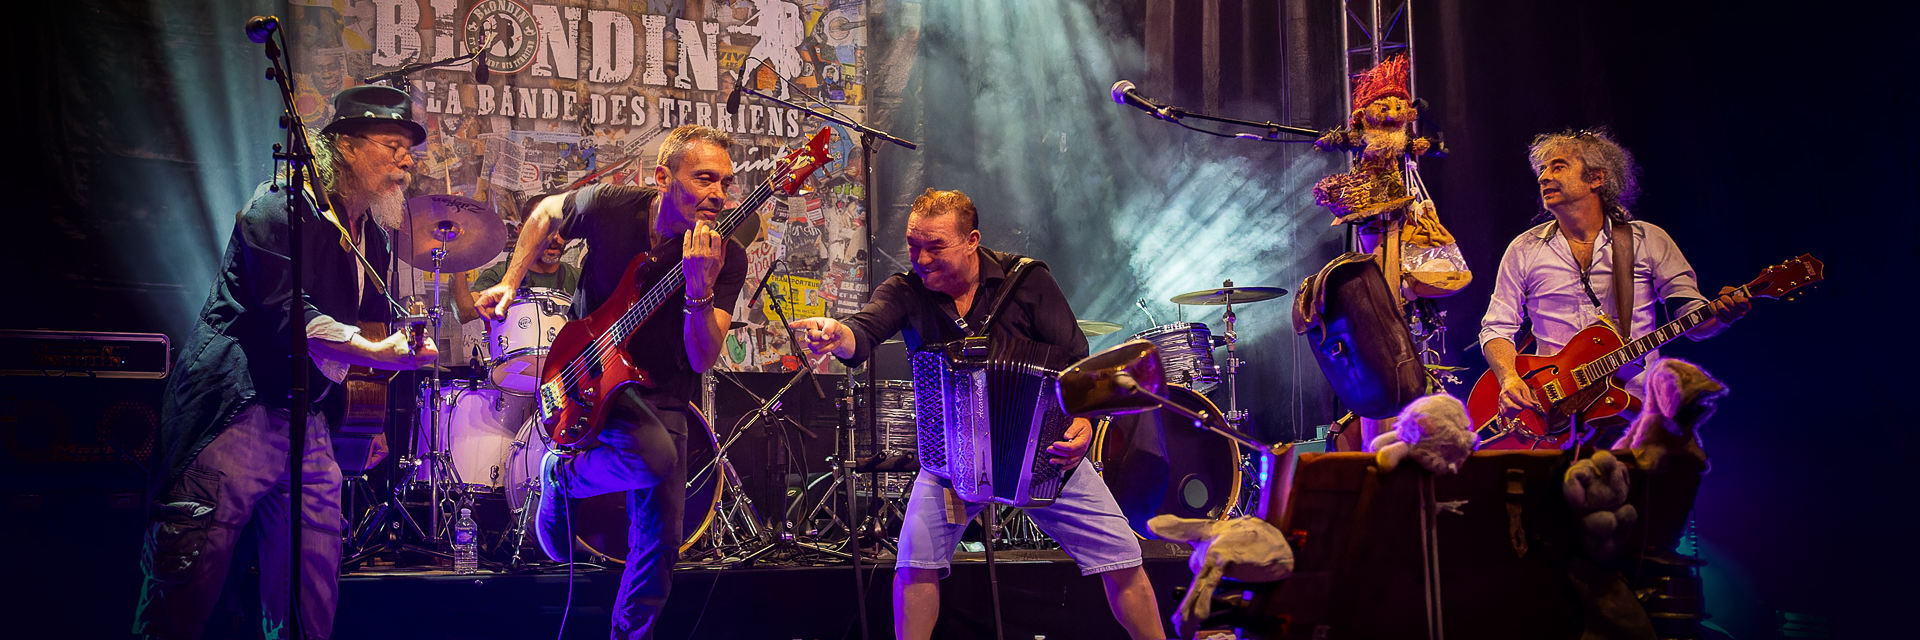 Blondin et la bande des terriens, groupe de musique Rock en représentation à Allier - photo de couverture n° 1